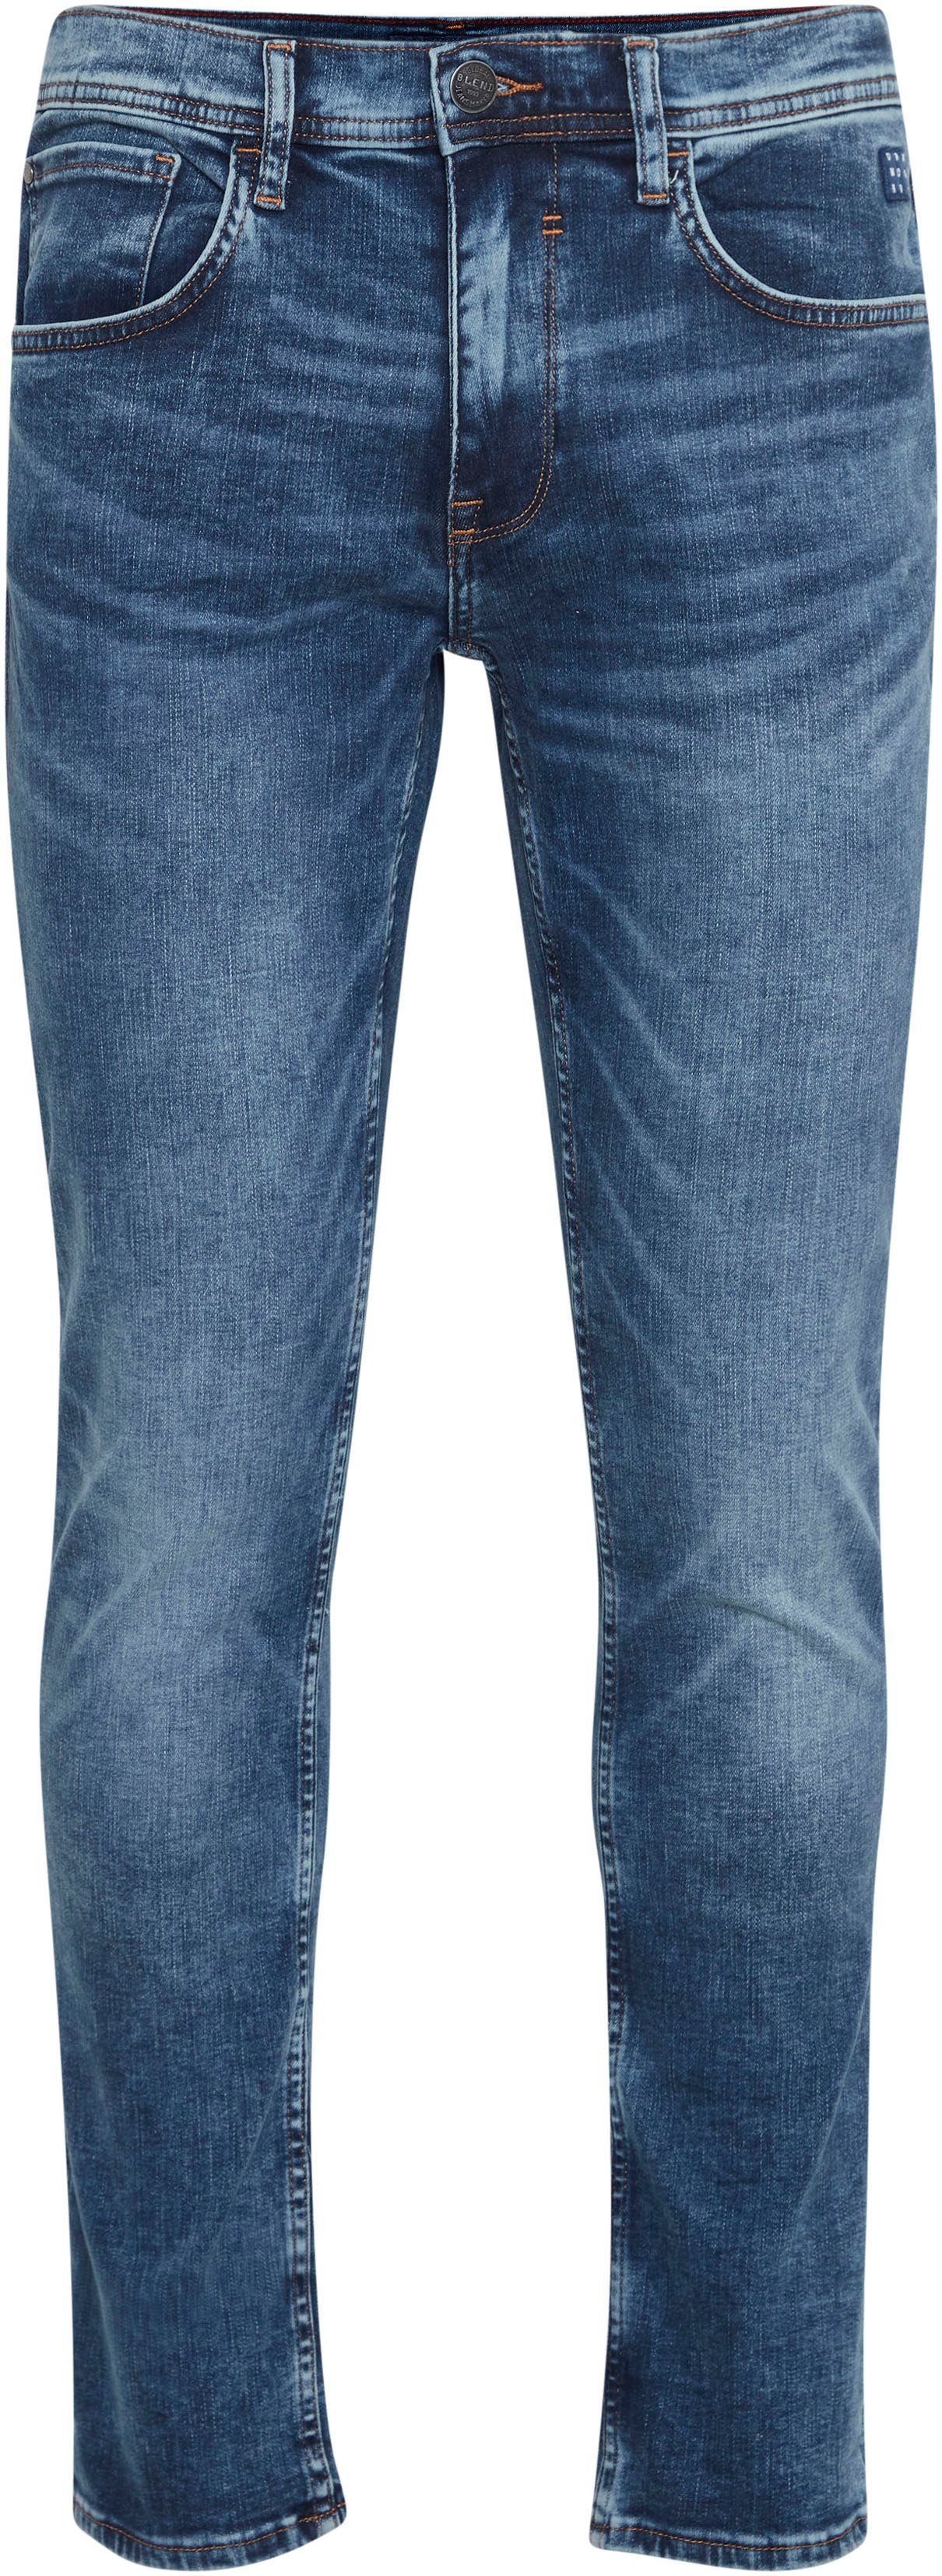 Slim-fit-Jeans Multiflex mid-blue-washed Jet Blend